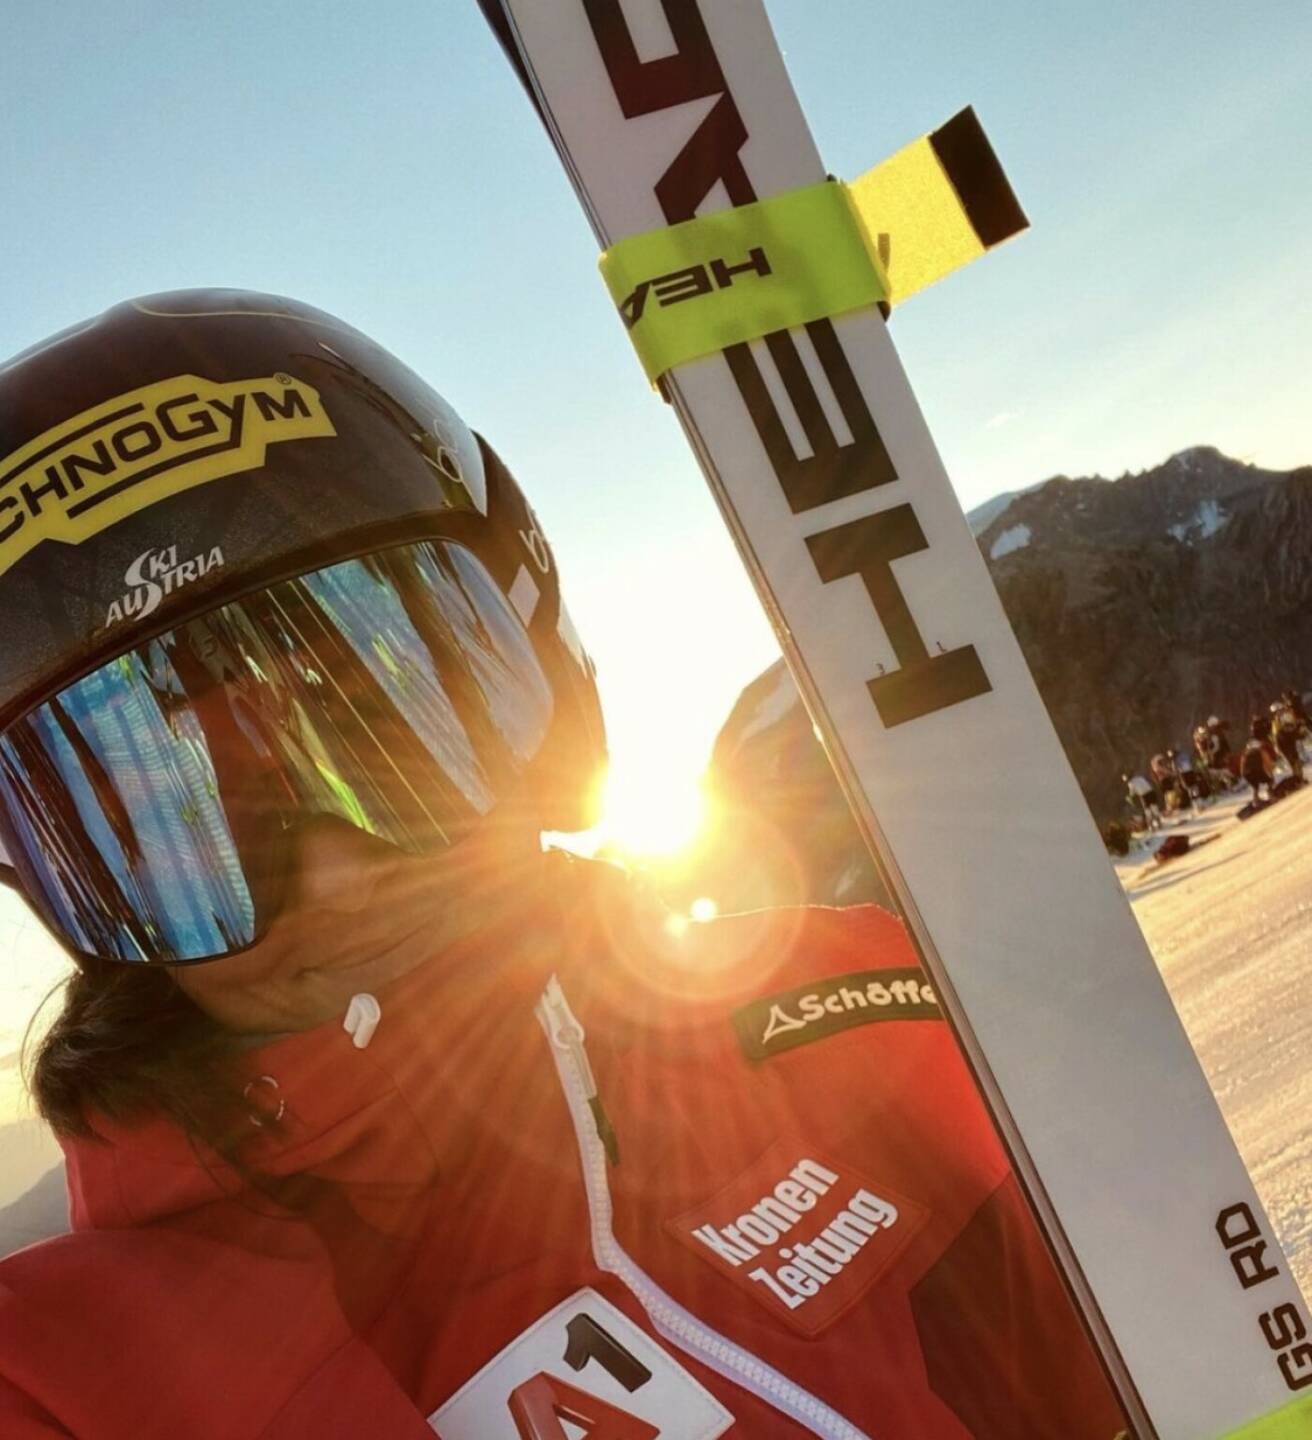 Sonnenaufgang Head Technogym Stephanie Venier
————————————————————
#sunrise #outsidelover #behappy #WorldCupRebels #HadRebels #championstrainwithtechnogym #glitterupyourlife✨
Von: https://www.instagram.com/p/CM9Rl0KMX6p/ (Stephanie Venier, Ski Alpin, http://www.sportgeschichte.at)